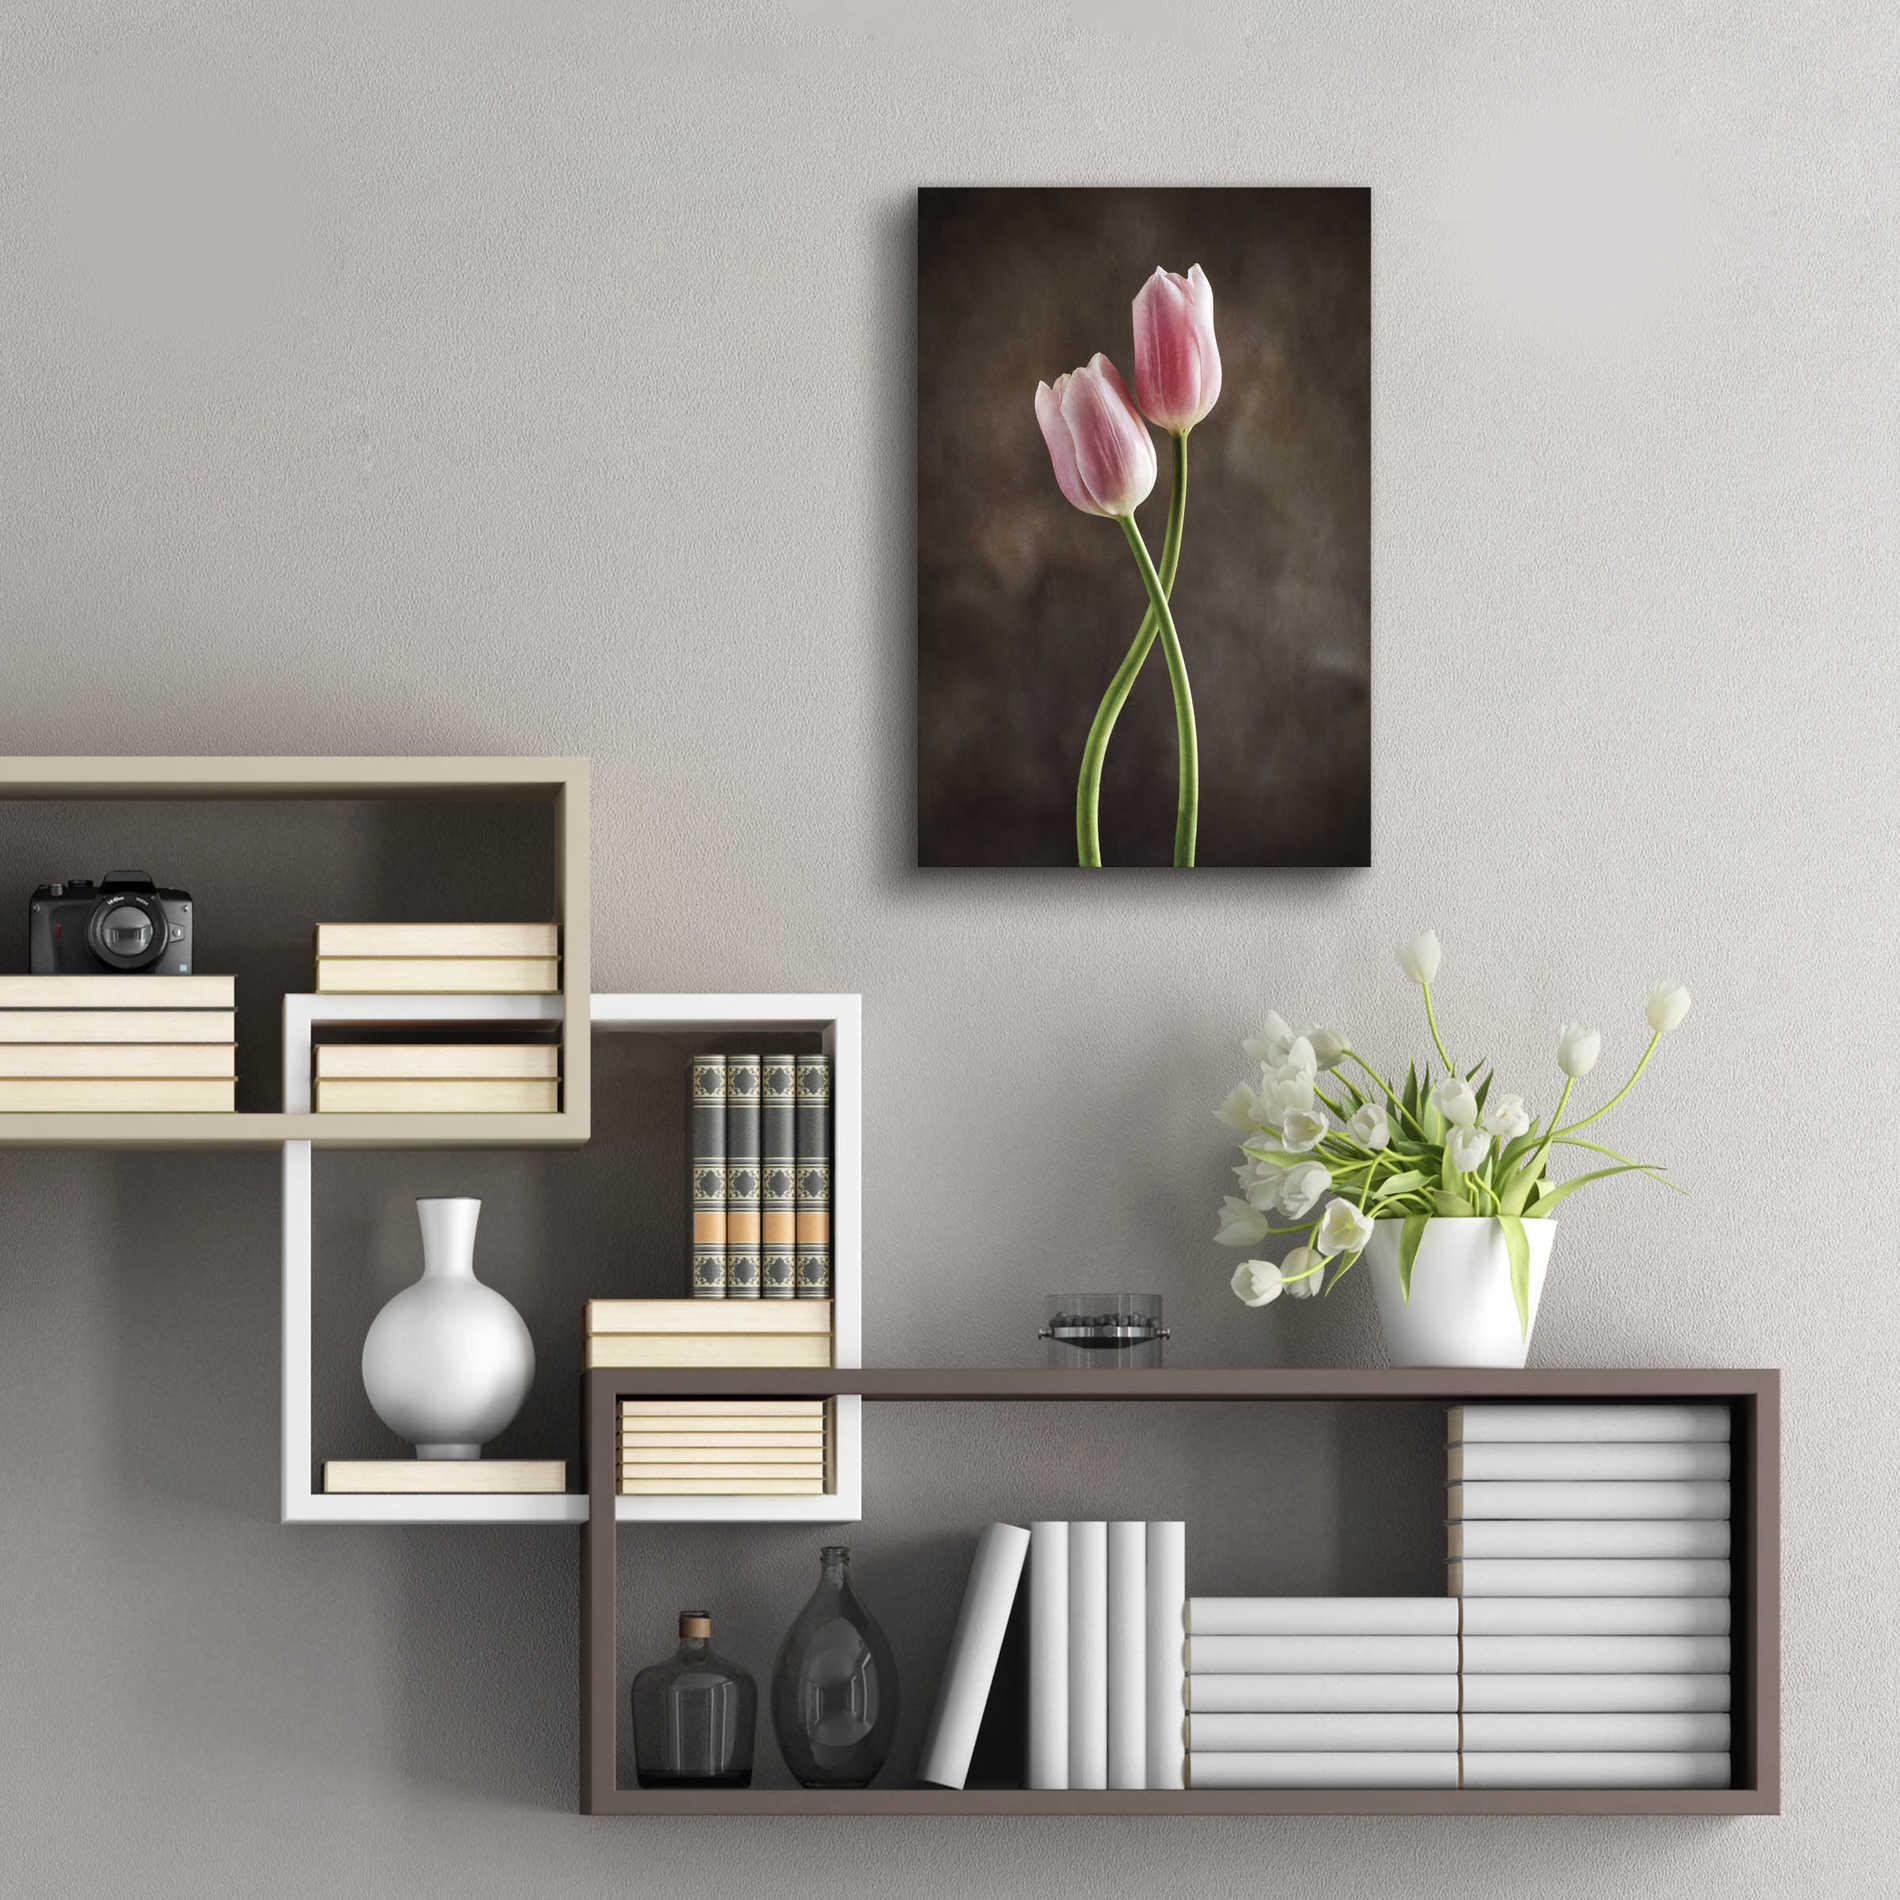 Epic Art 'Spring Tulips V' by Debra Van Swearingen, Acrylic Glass Wall Art,16x24